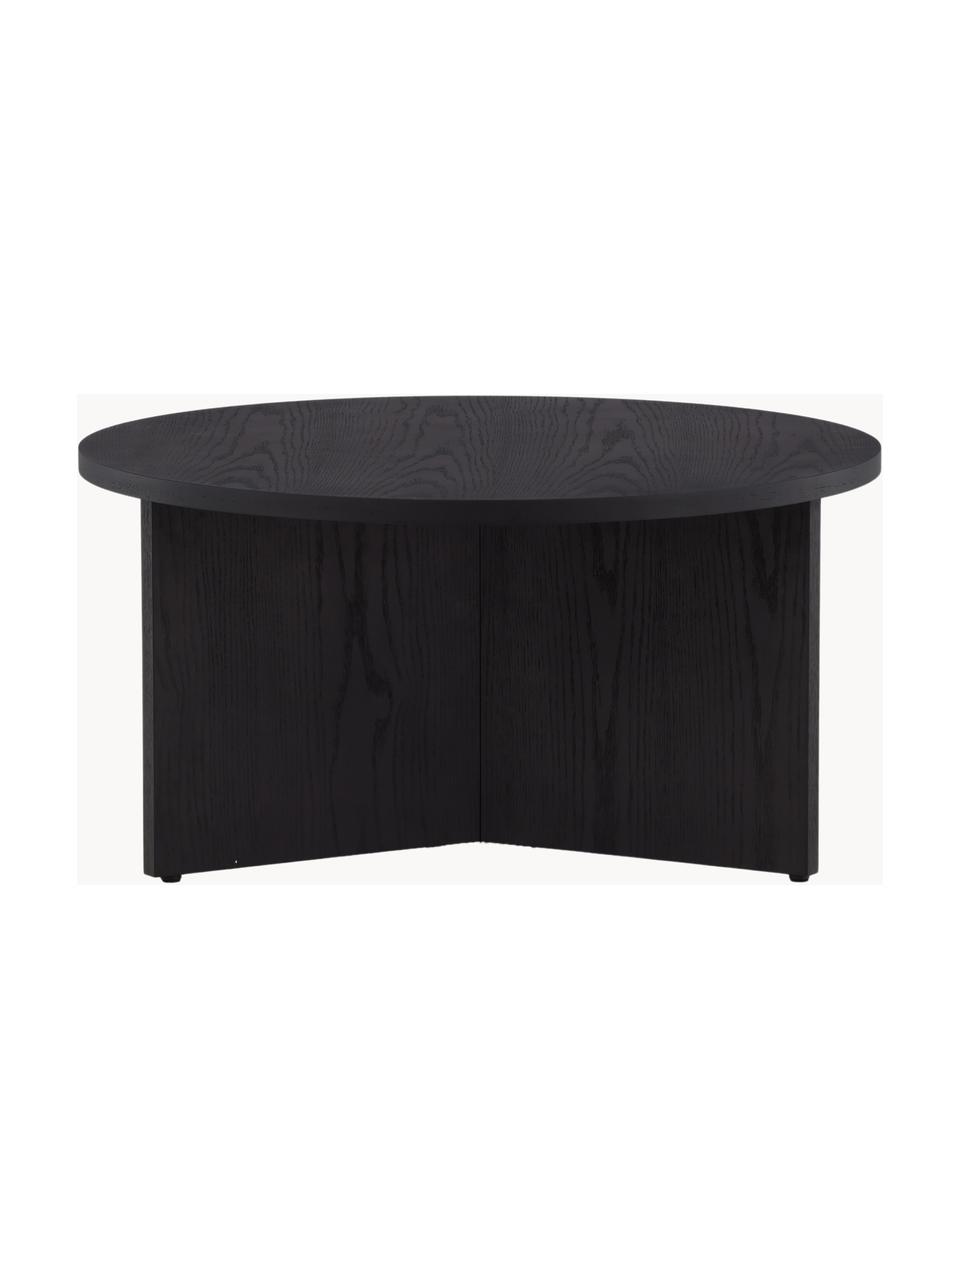 Kulatý dřevěný konferenční stolek Saltö, MDF deska (dřevovláknitá deska střední hustoty), Dřevo, Ø 65 cm, V 33 cm